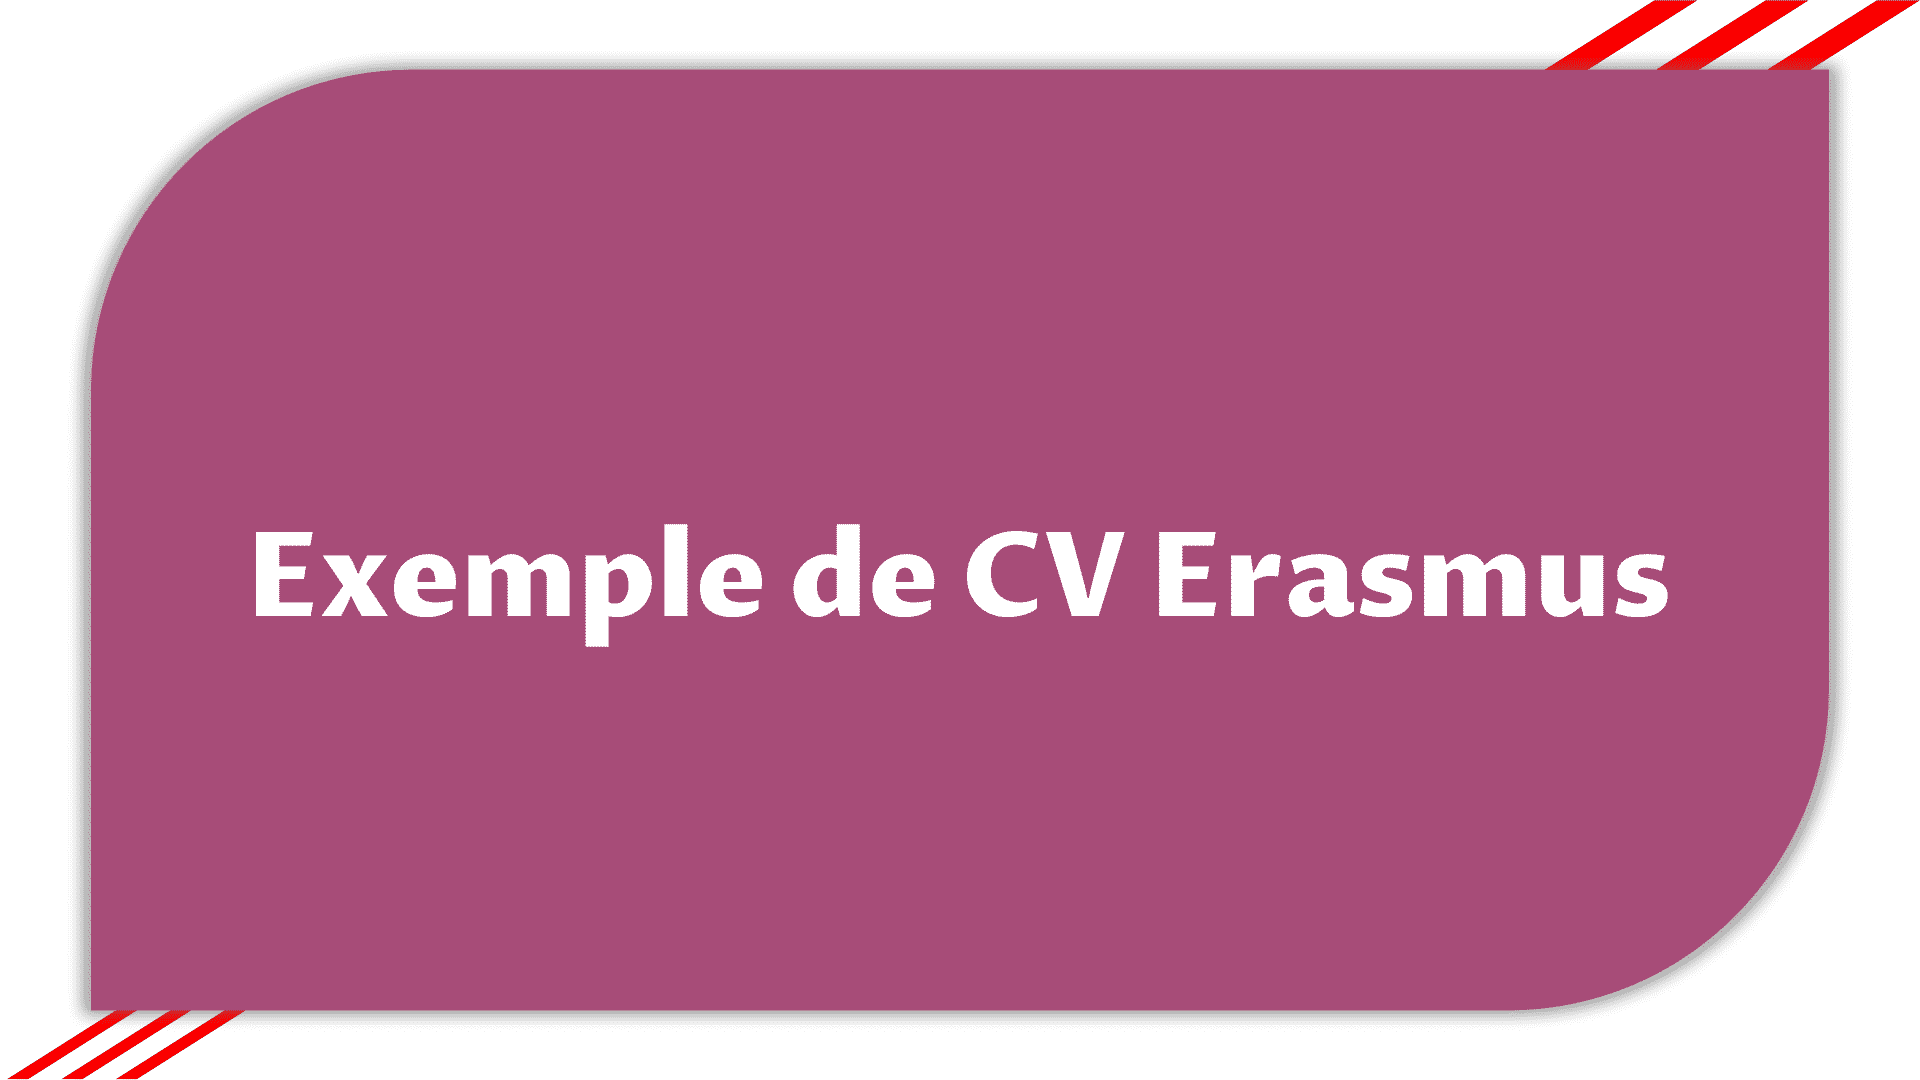 Télécharger Exemple de CV Erasmus > Etudier en France